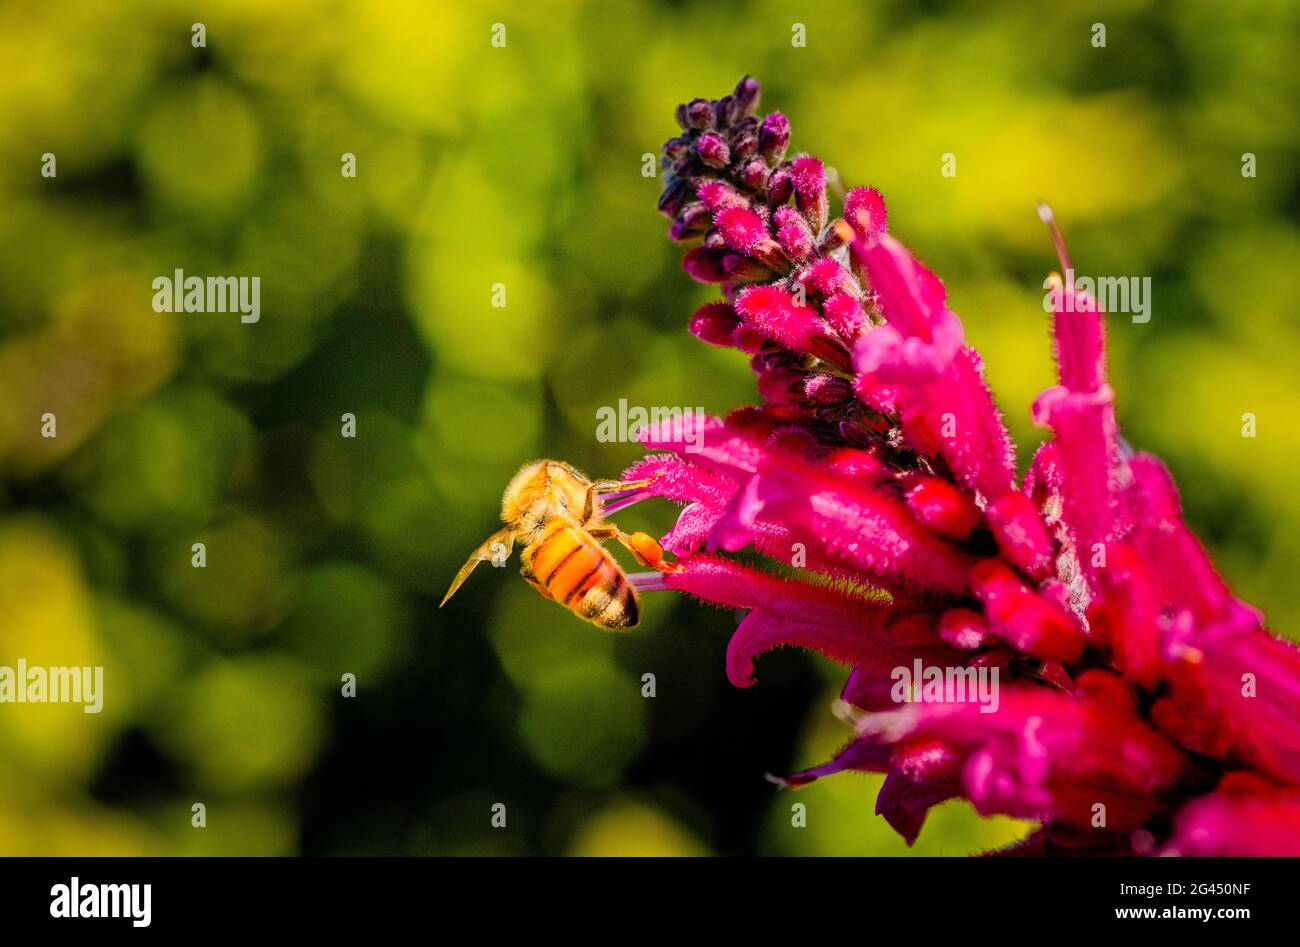 Gros plan de l'abeille sur la fleur rose Banque D'Images